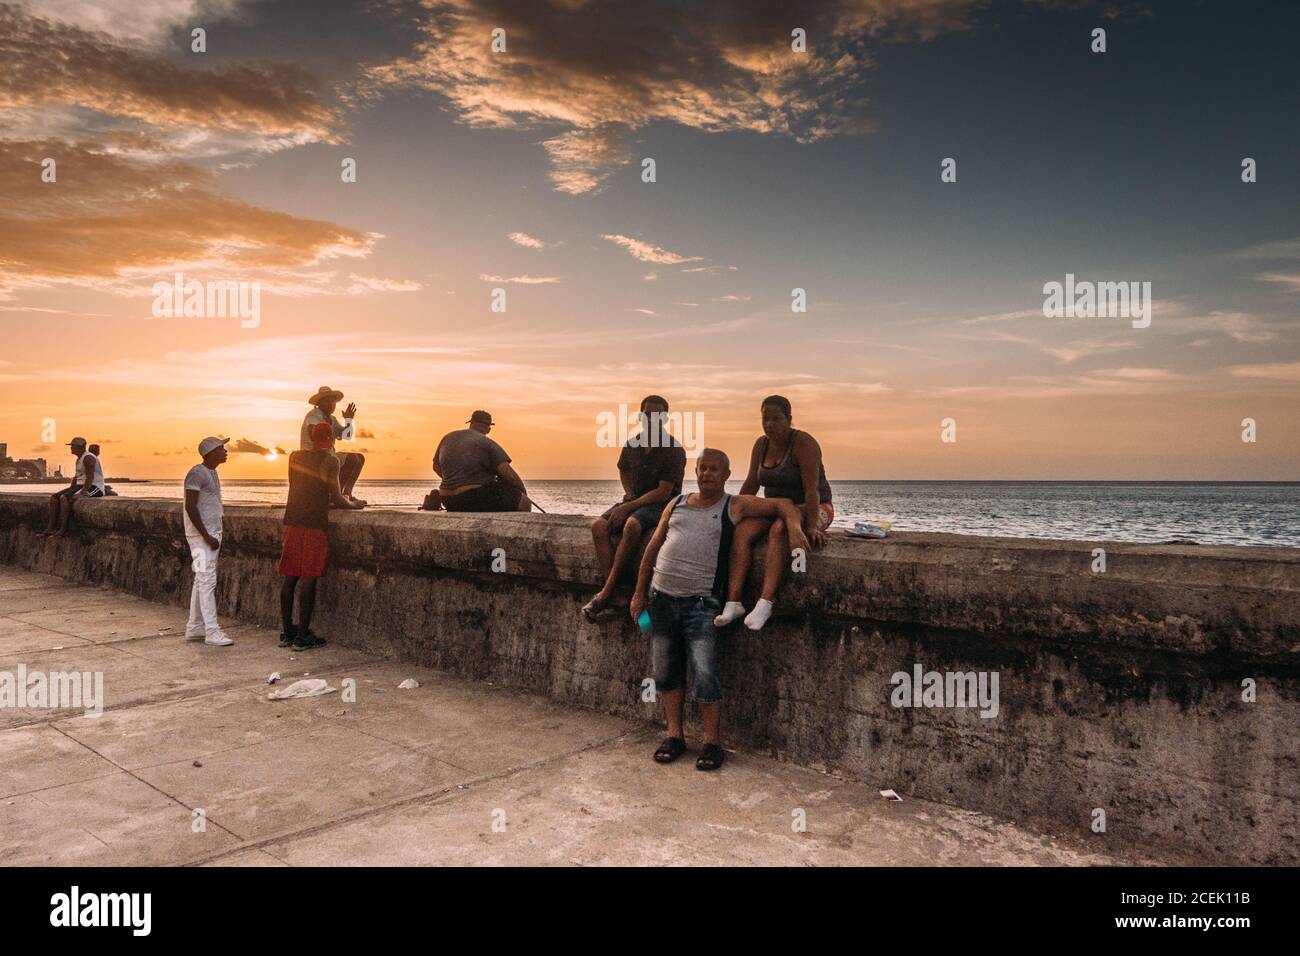 LA HABANA, CUBA - 1 MAGGIO 2018: Cittadini cubani che si agghiacciano sul lungomare pedonale di cemento sullo sfondo del cielo del tramonto, Foto Stock